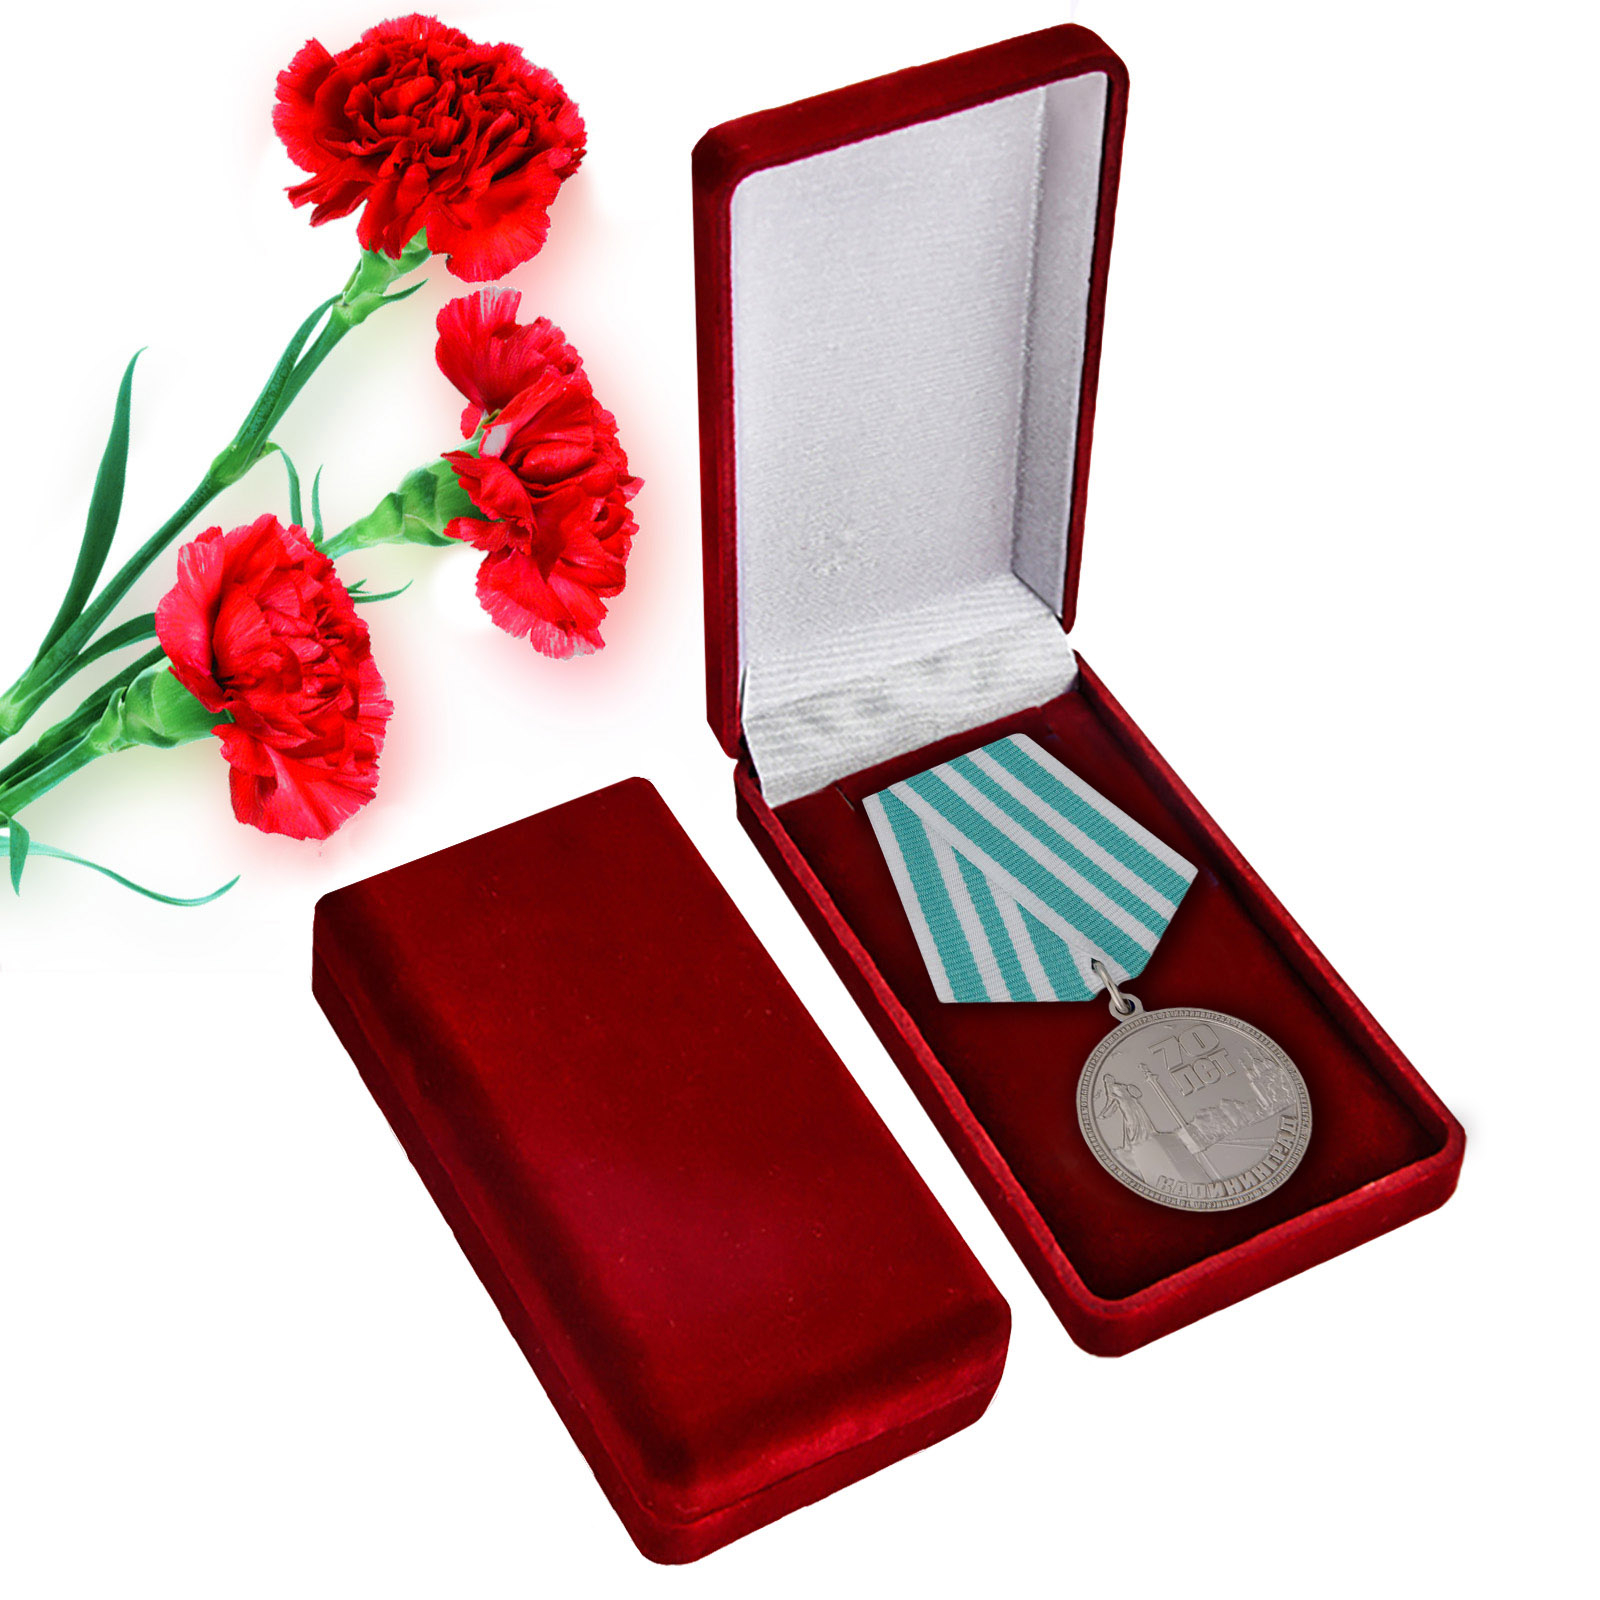 Купить медаль 70 лет Калининграду в подарочном футляре в подарок